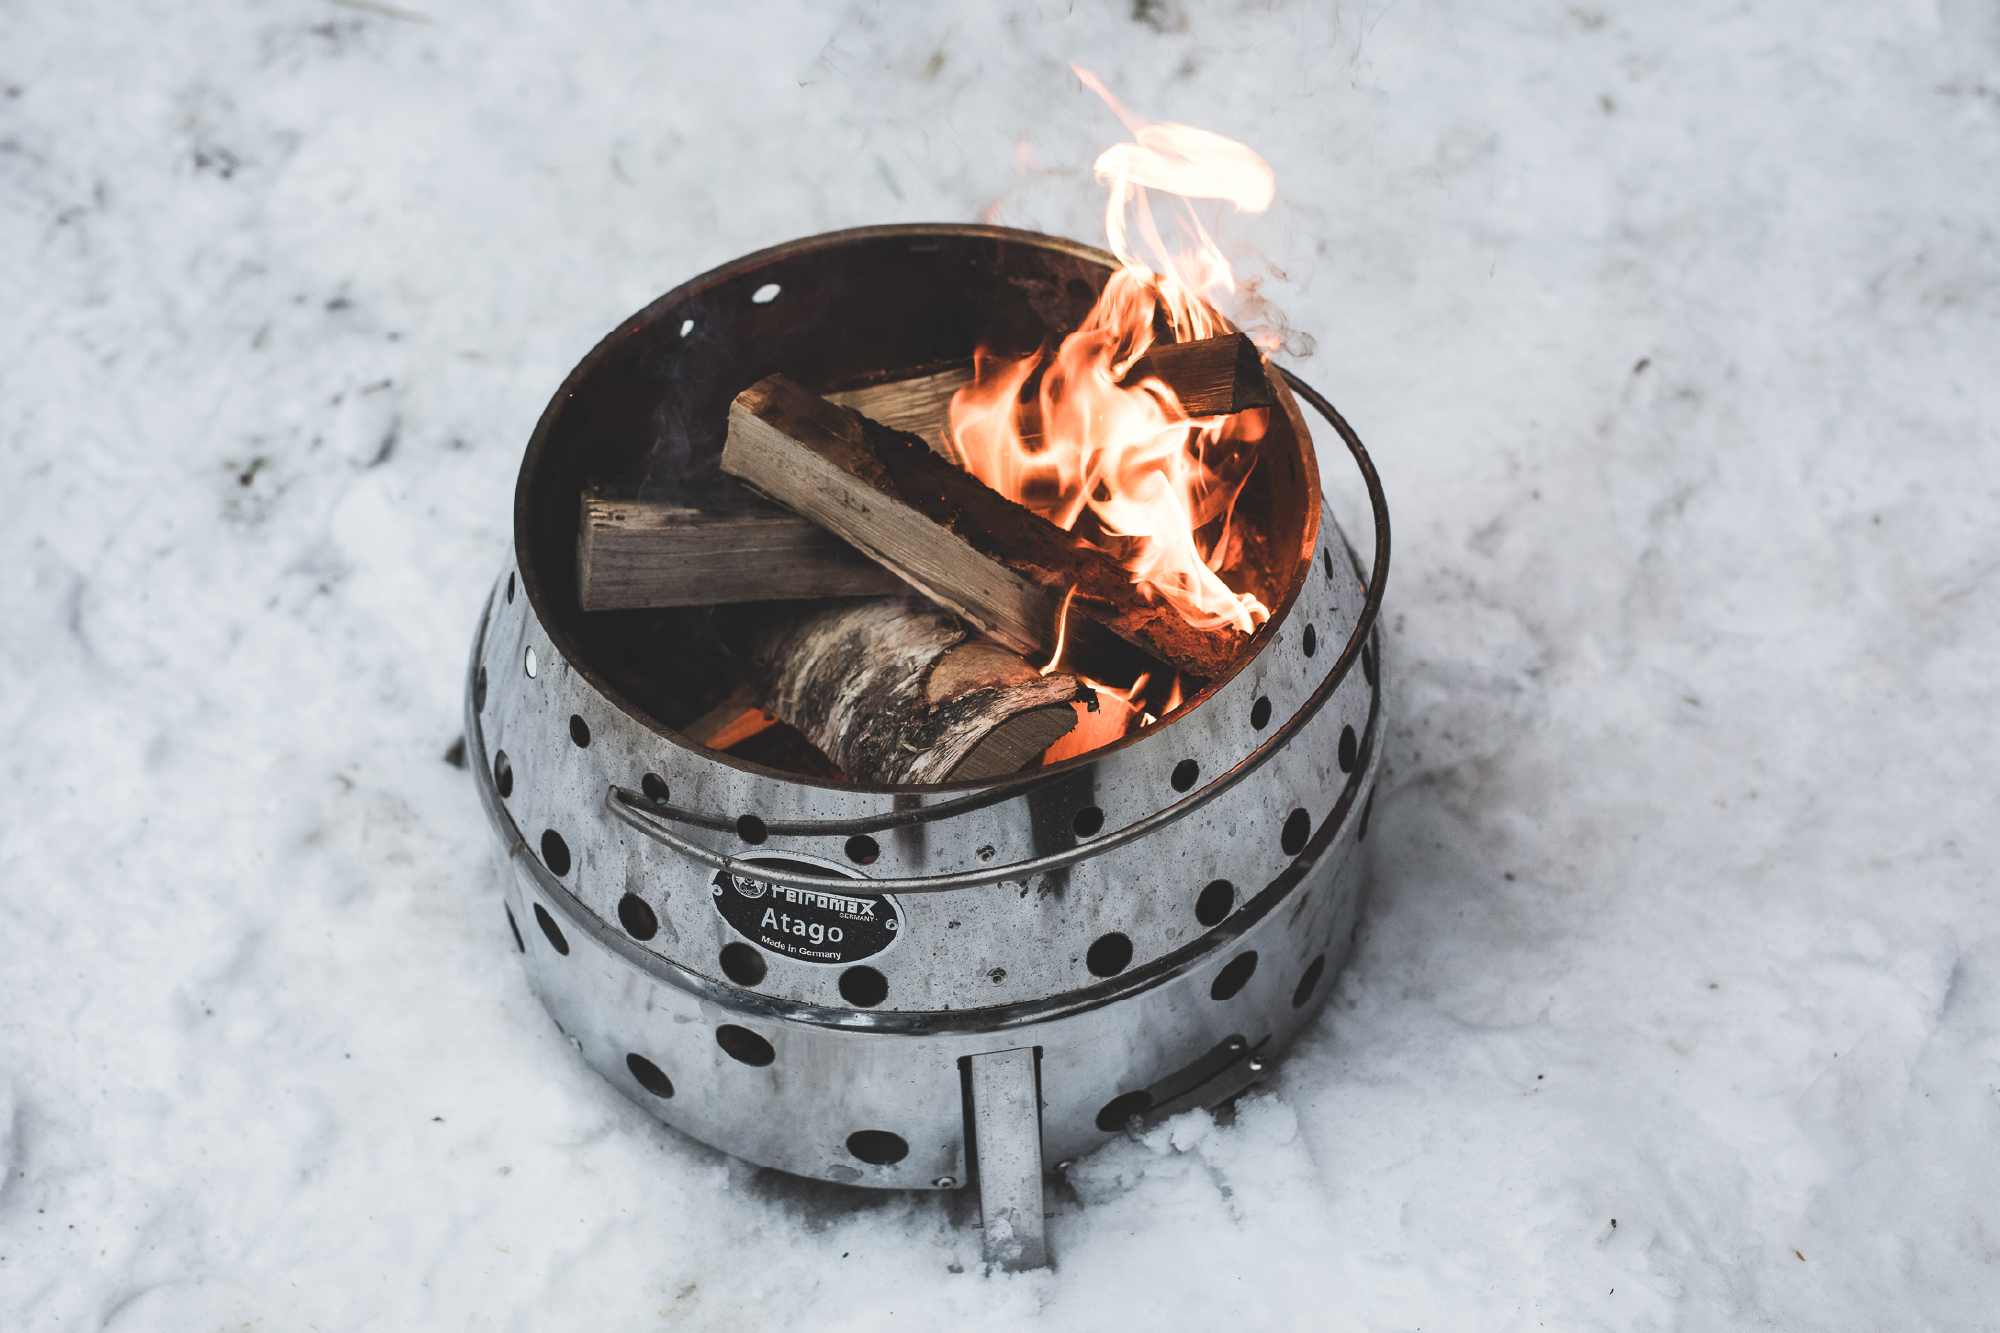 Petromax Atago als Grill, Feuerschale und zum Kochen mit dem Dutch Oven